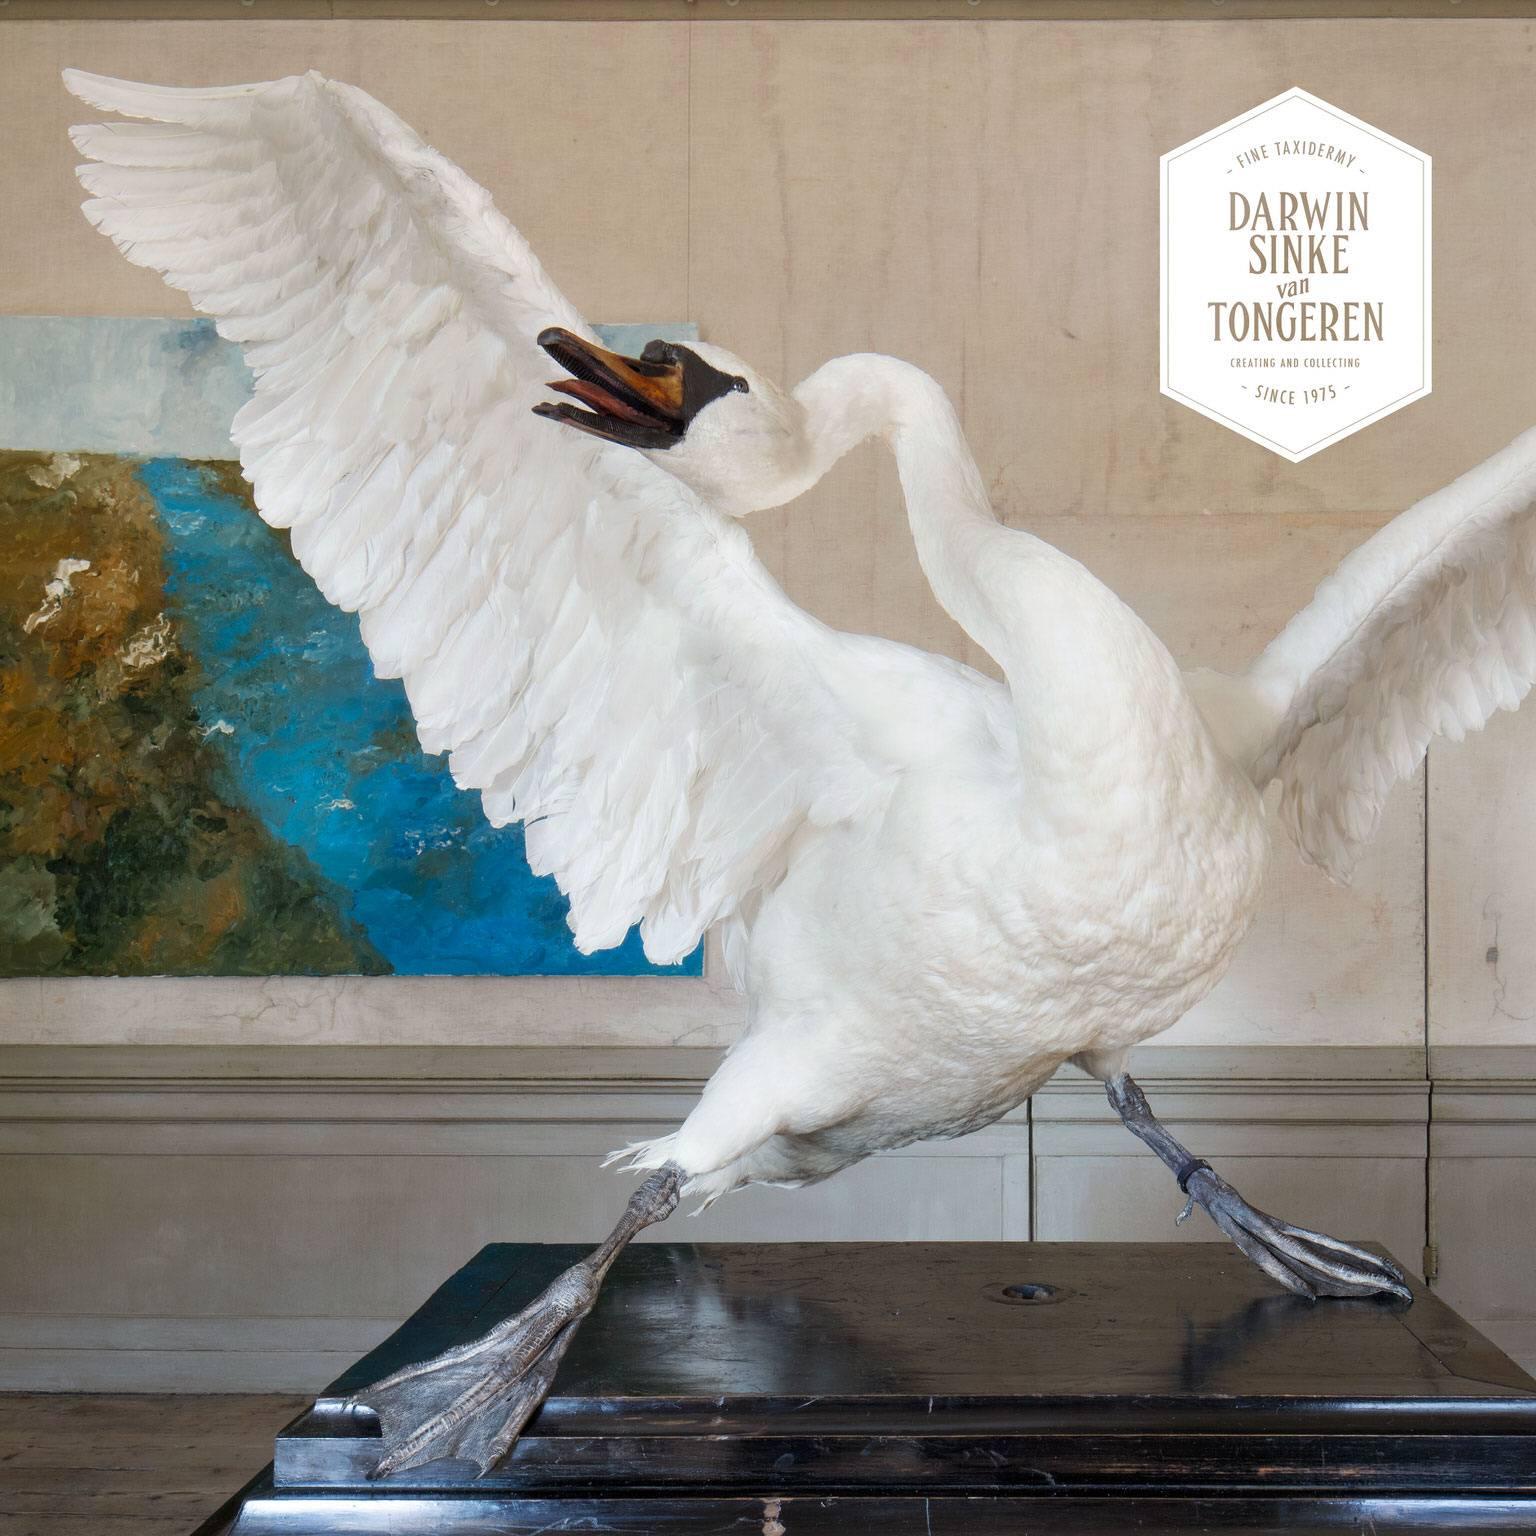 Dutch Asselijn's Threatened Swan from Exhibition TIER at MOA by Sinke & Van Tongeren